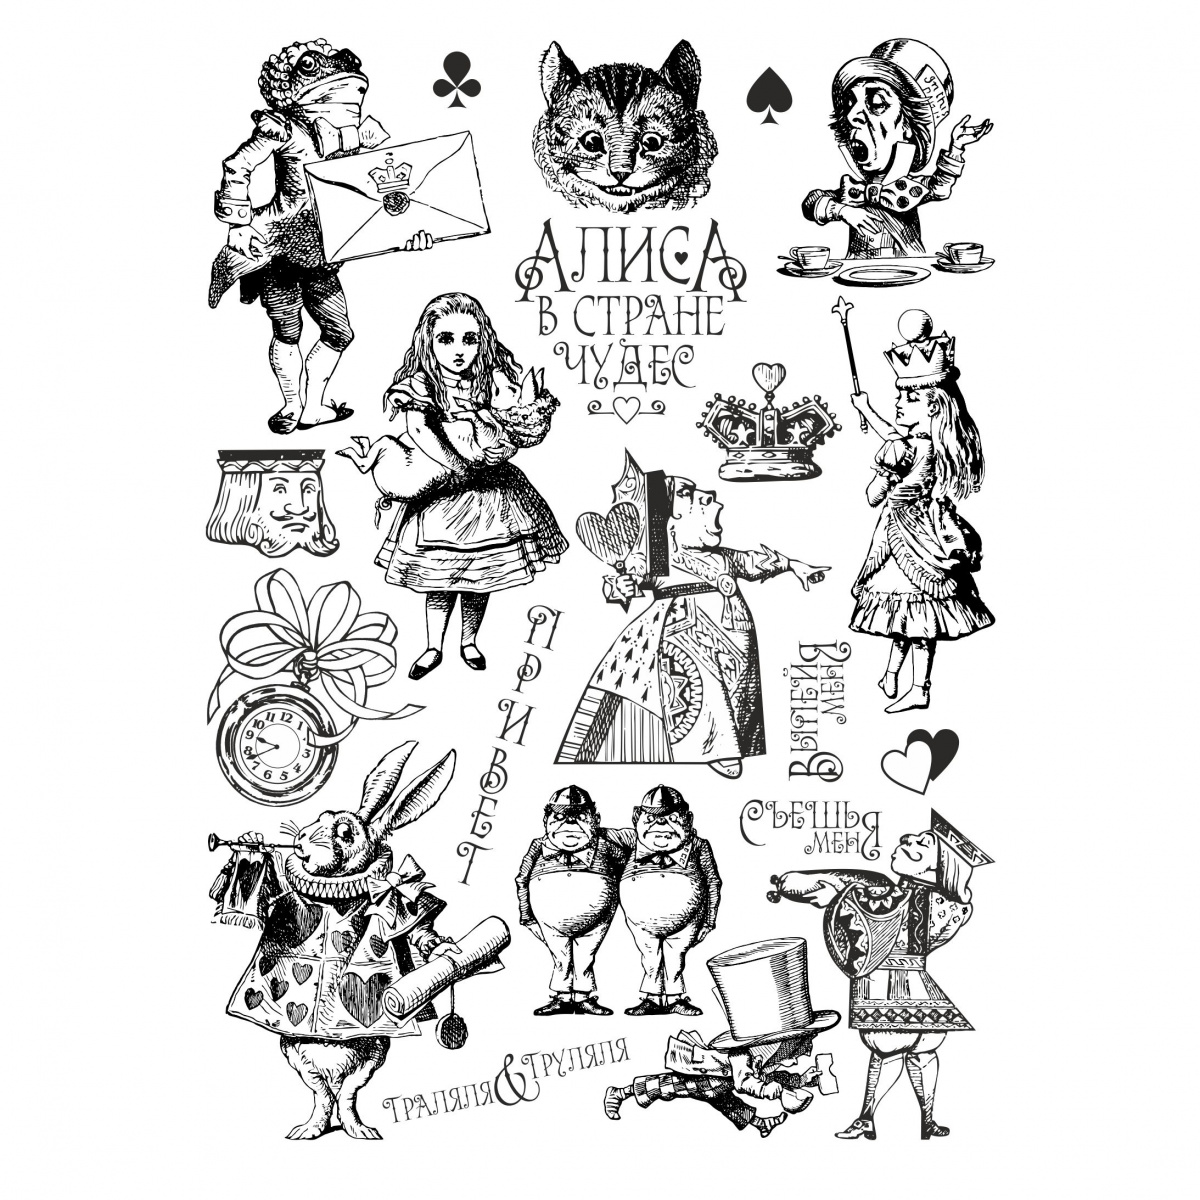 Рисунок основных персонажей из сказки про Алису